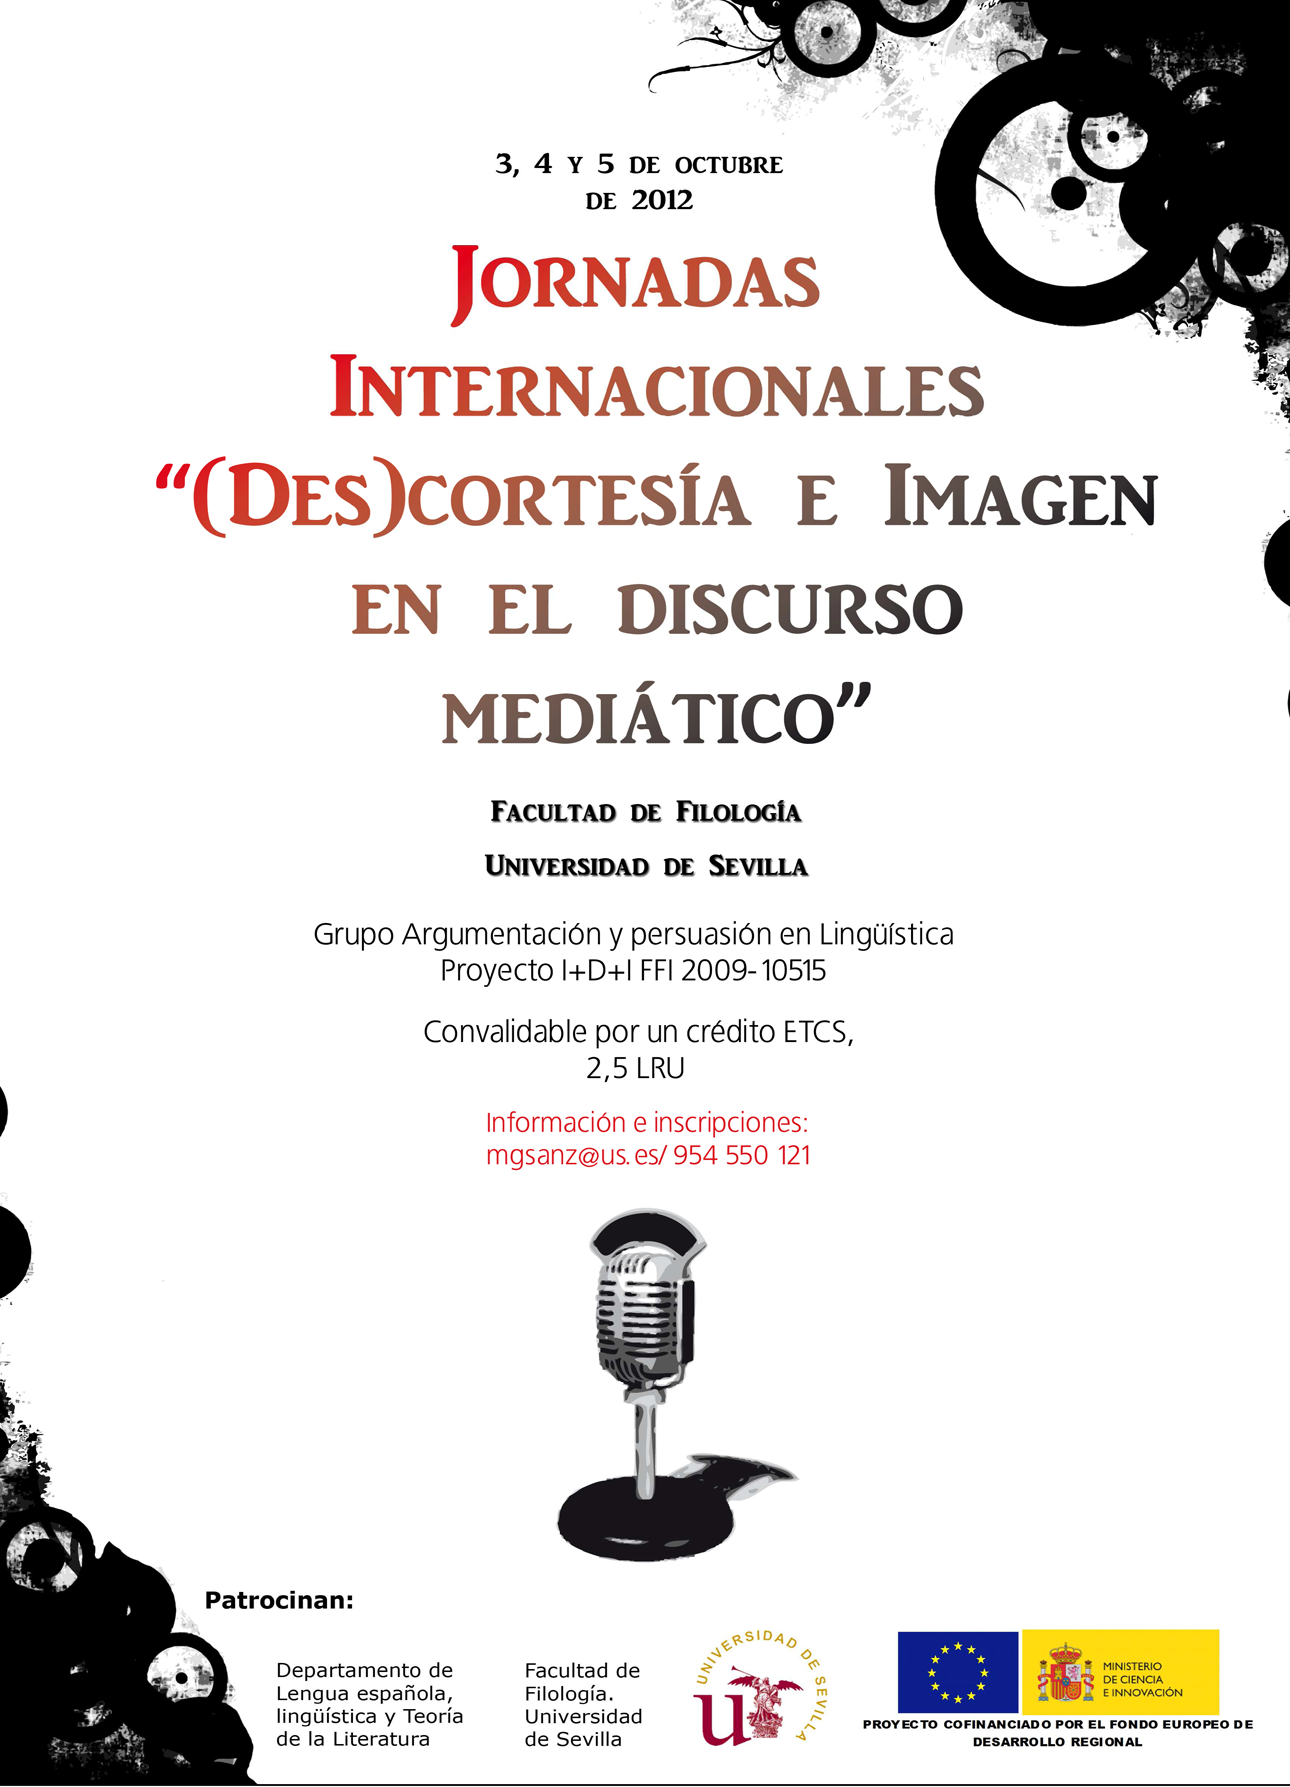 <p>JORNADAS INTERNACIONALES: IMAGEN SOCIAL Y MEDIOS DE COMUNICACIÓN</p>
